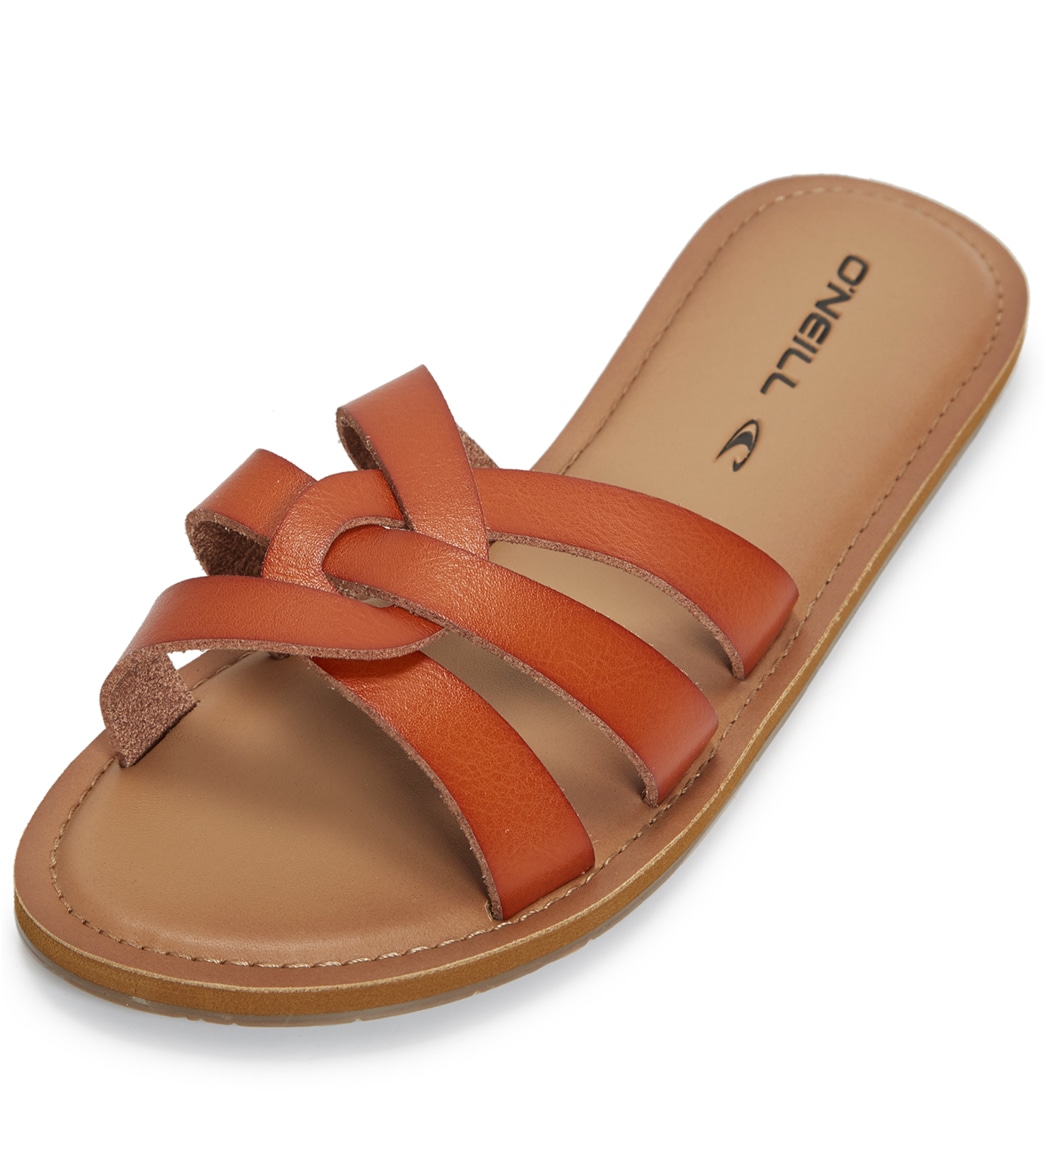 O'neill Dawson Slides Sandals - Cognac 7 - Swimoutlet.com